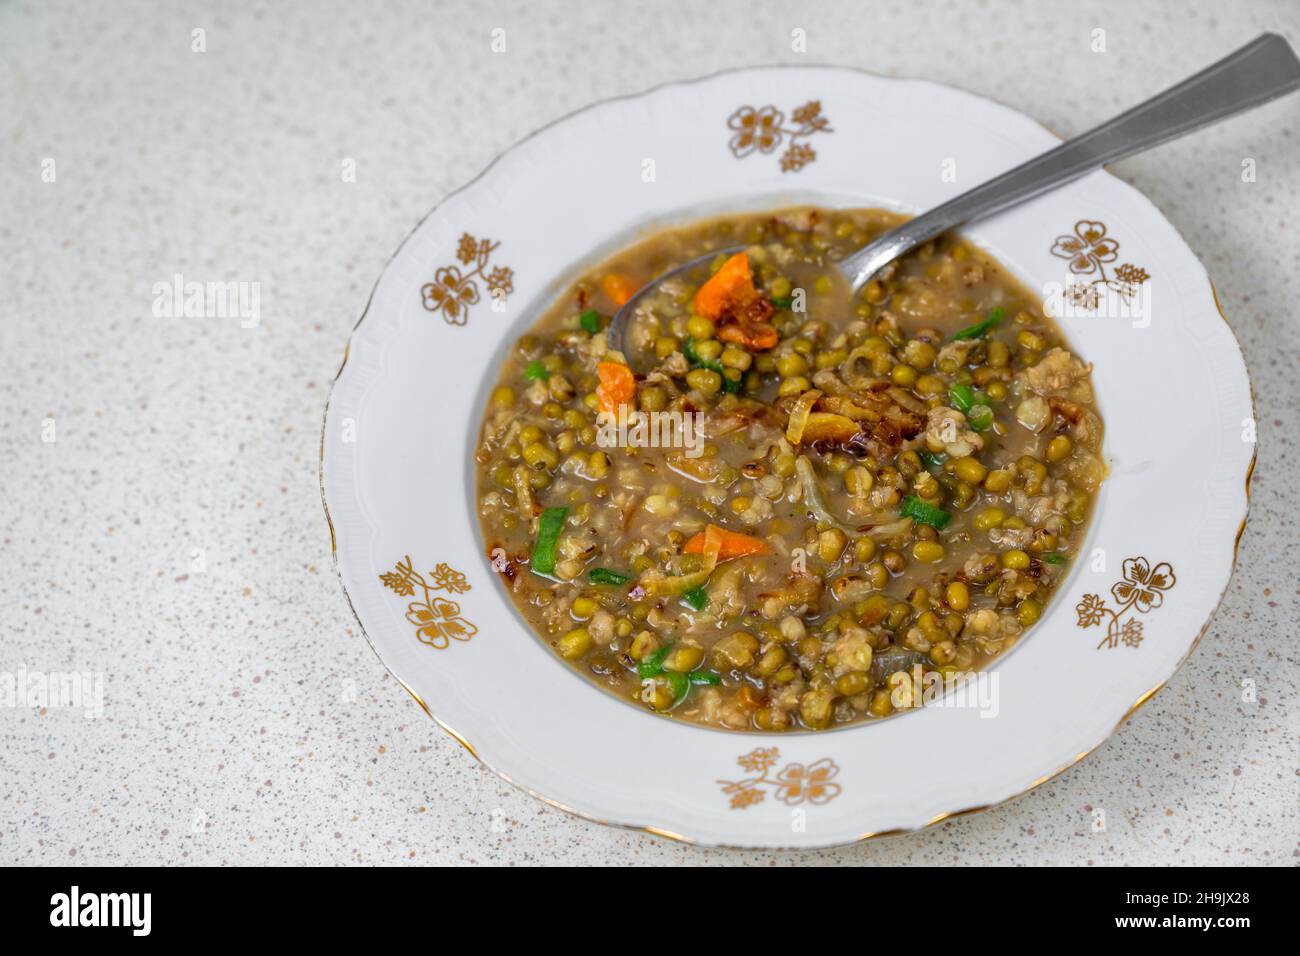 Soupe de haricots Mungo (vigna radiata) dans une assiette avec une cuillère (vigna radiata) sur la table.Plats végétariens ou végétaliens. Banque D'Images